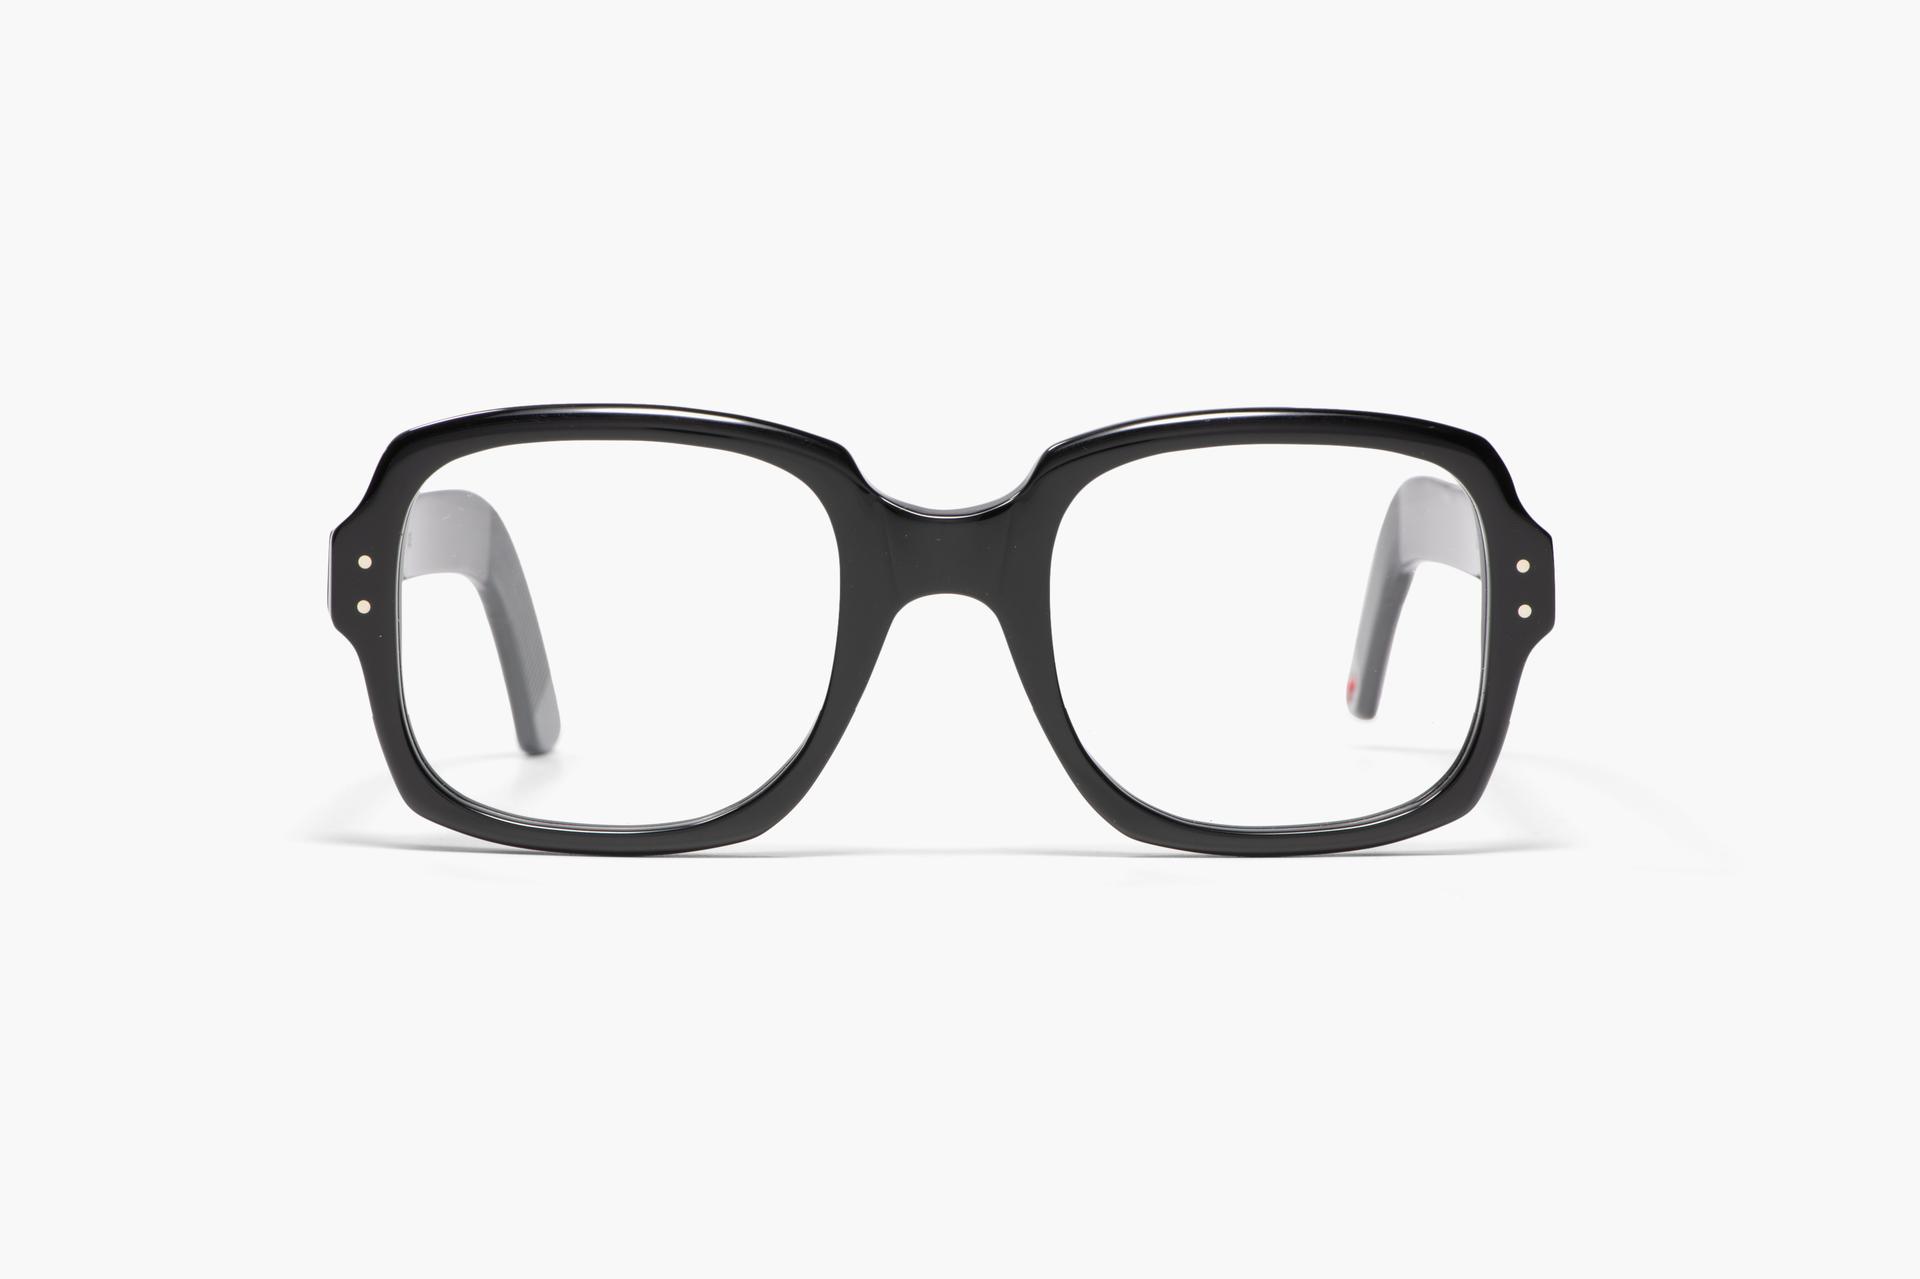 ALF Mejores gafas | Pruébese en línea y encuentre una óptica | FAVR